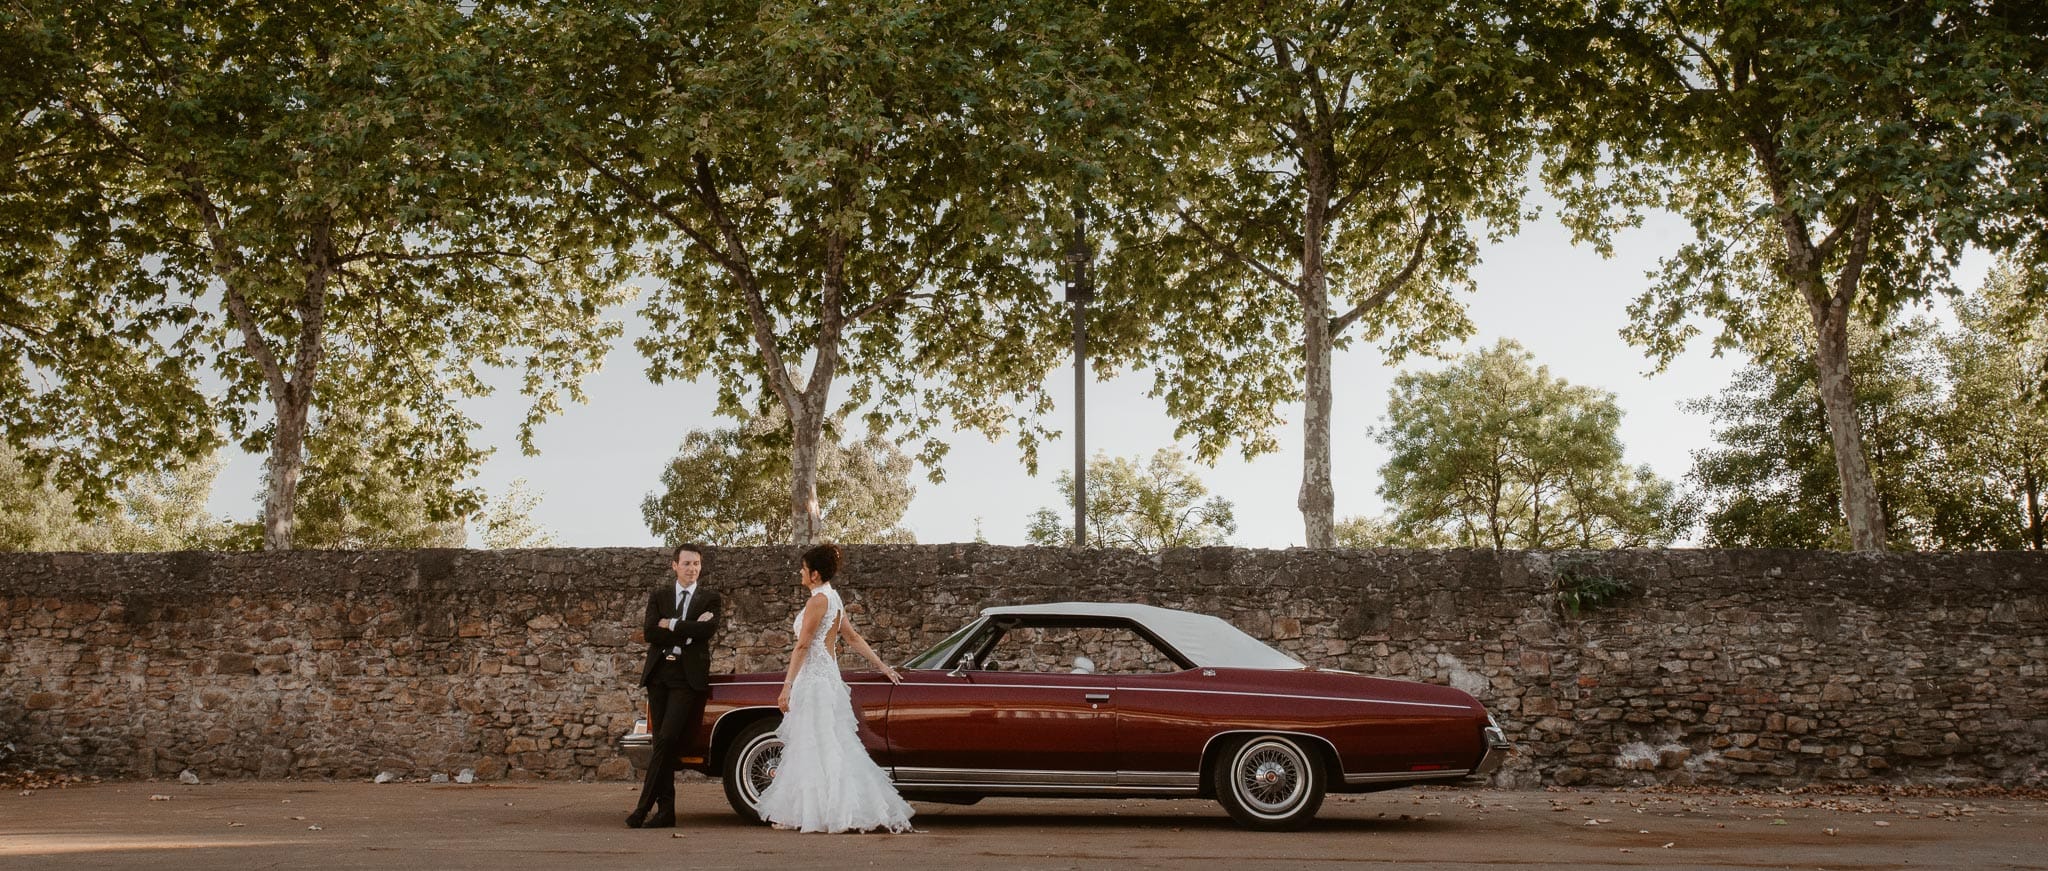 Séance couple après mariage mise en scène avec voiture américaine de collection dans une friche industrielle aux alentours de Nantes par Geoffrey Arnoldy photographe